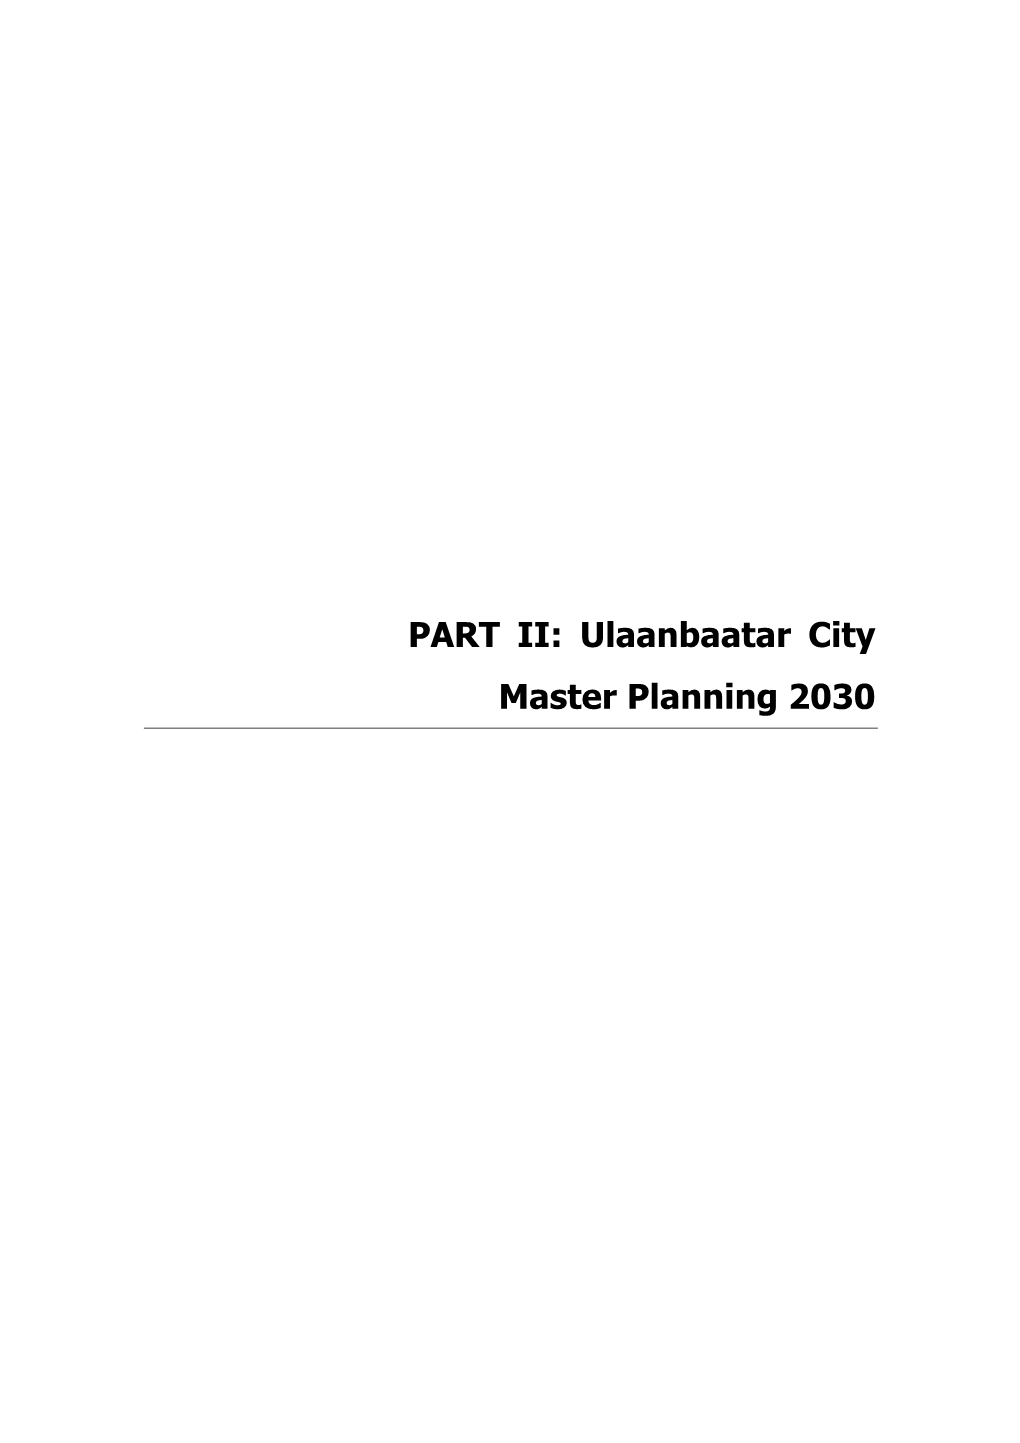 PART II: Ulaanbaatar City Master Planning 2030